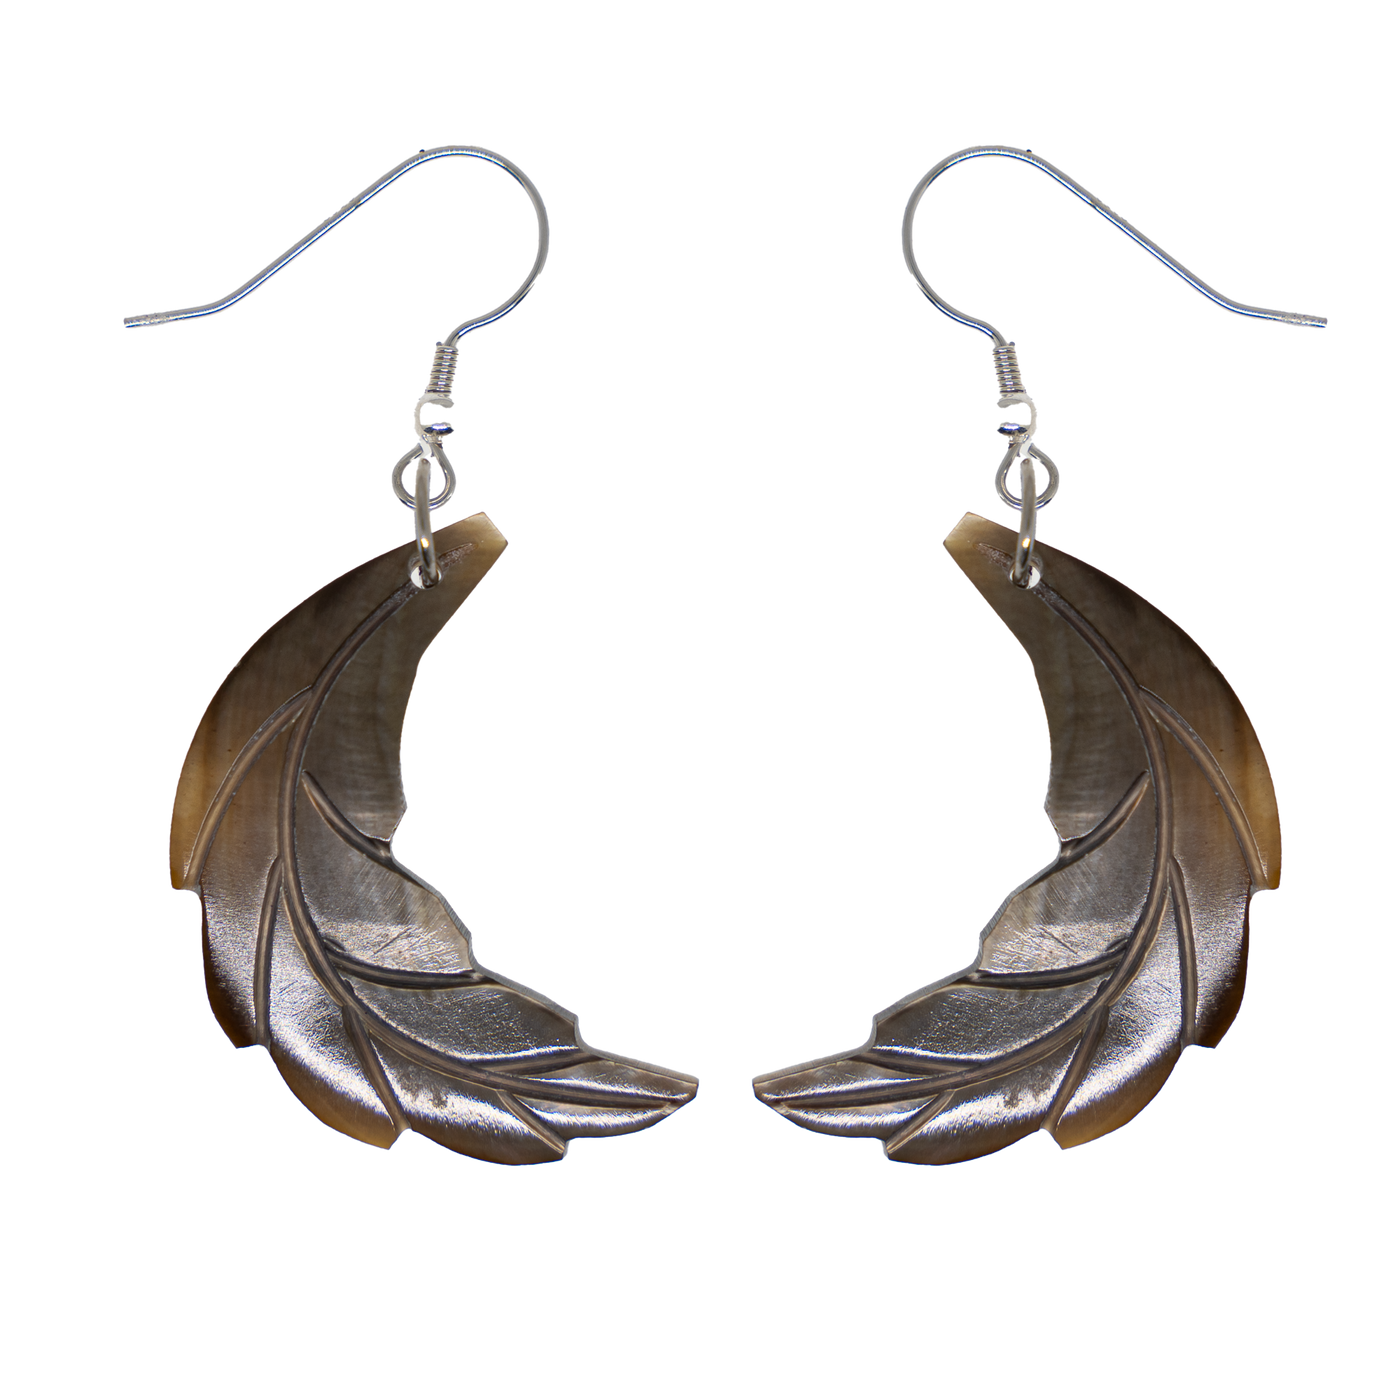 Black Oyster Shell Laurel Wreath Leaf Earrings -  .925 sterling silver